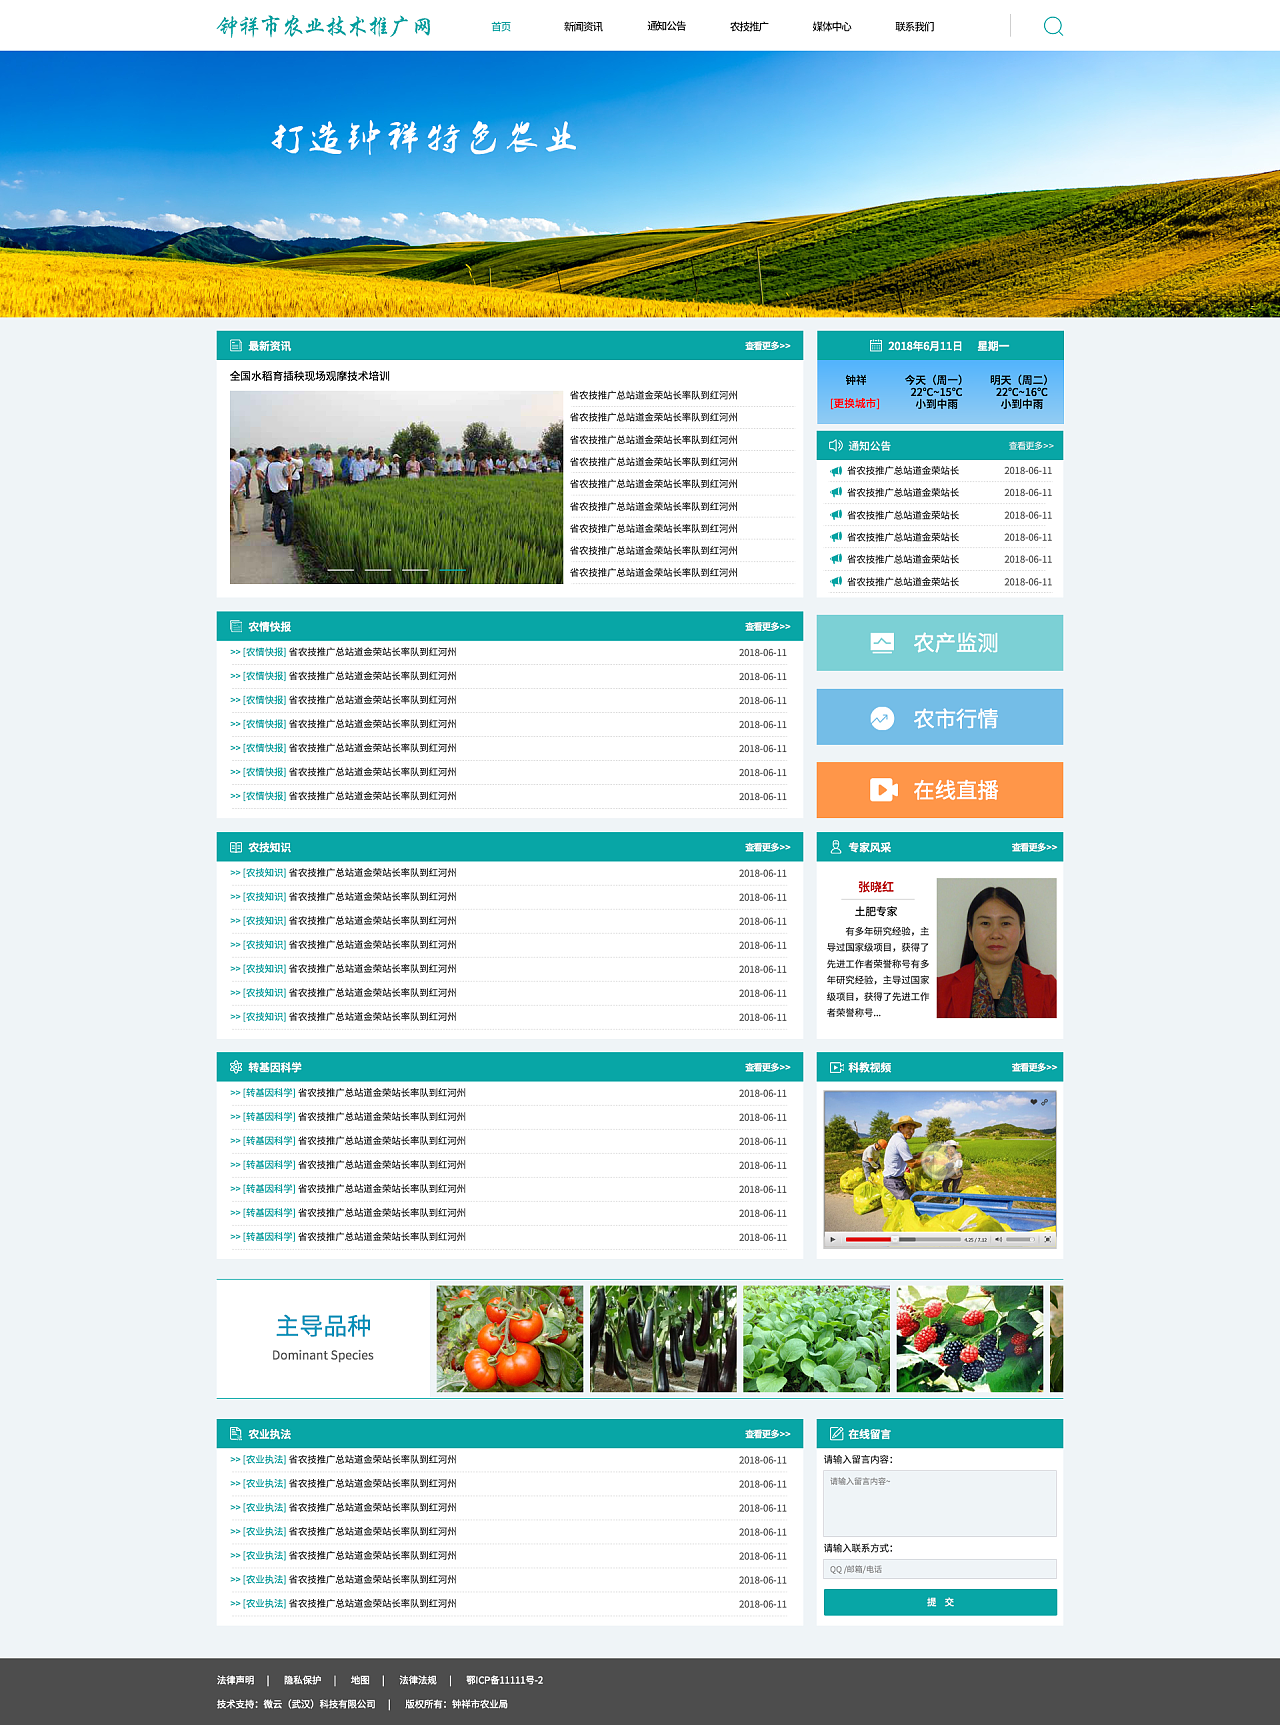 农业企业官网/农产品/农业技术/农业资讯网站